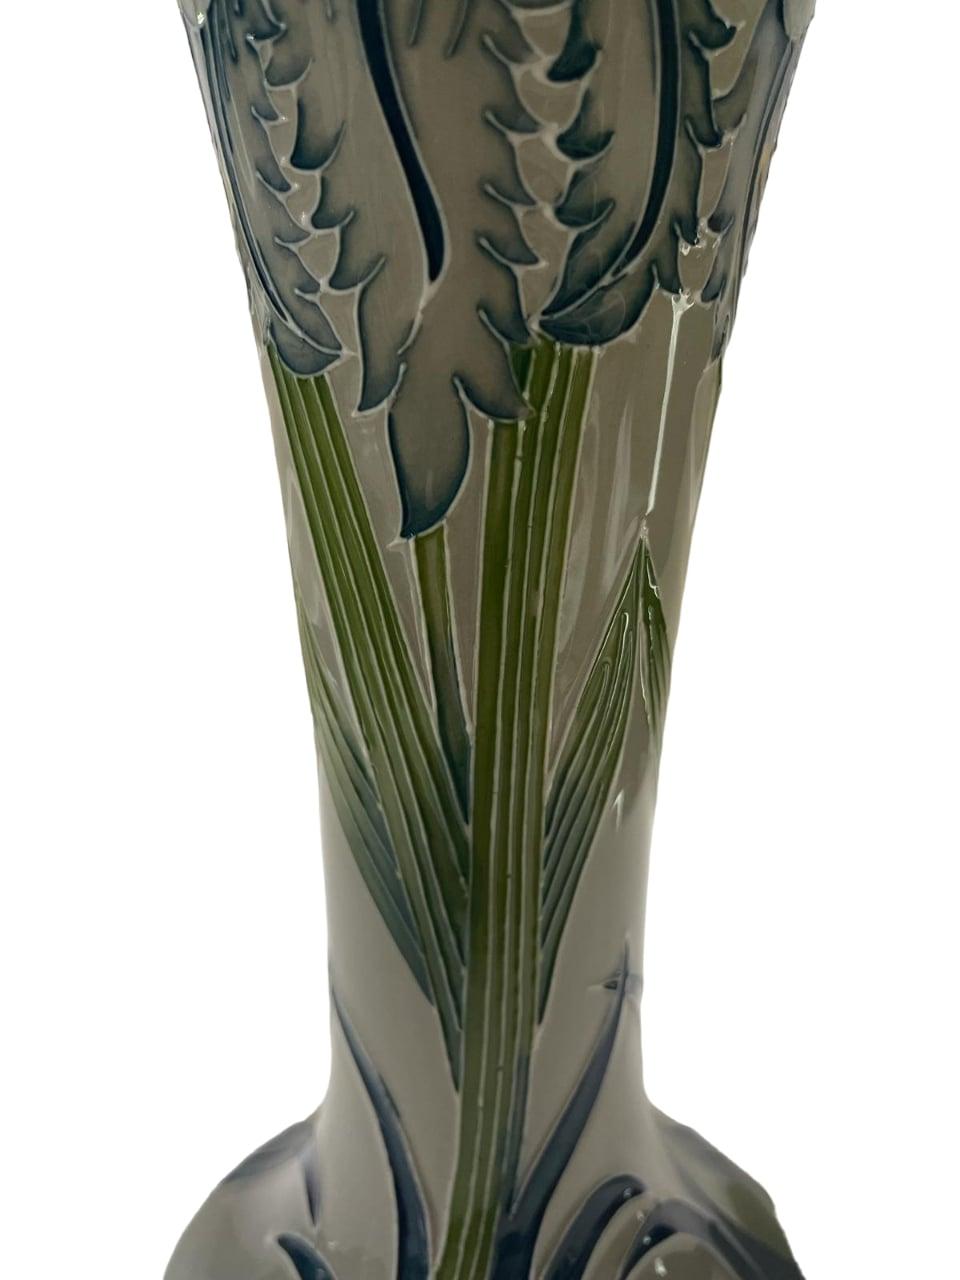 Zeitgenössische Moorcroft-Vase mit dem Muster Green Iris, schlank und spitz zulaufend, zylindrische Vase, 2013 Centennial Relaunch des Designs von William Moorcroft aus dem Jahr 1913.
Aus der Legacy Collection. Datiert 2013, nummerierte Auflage